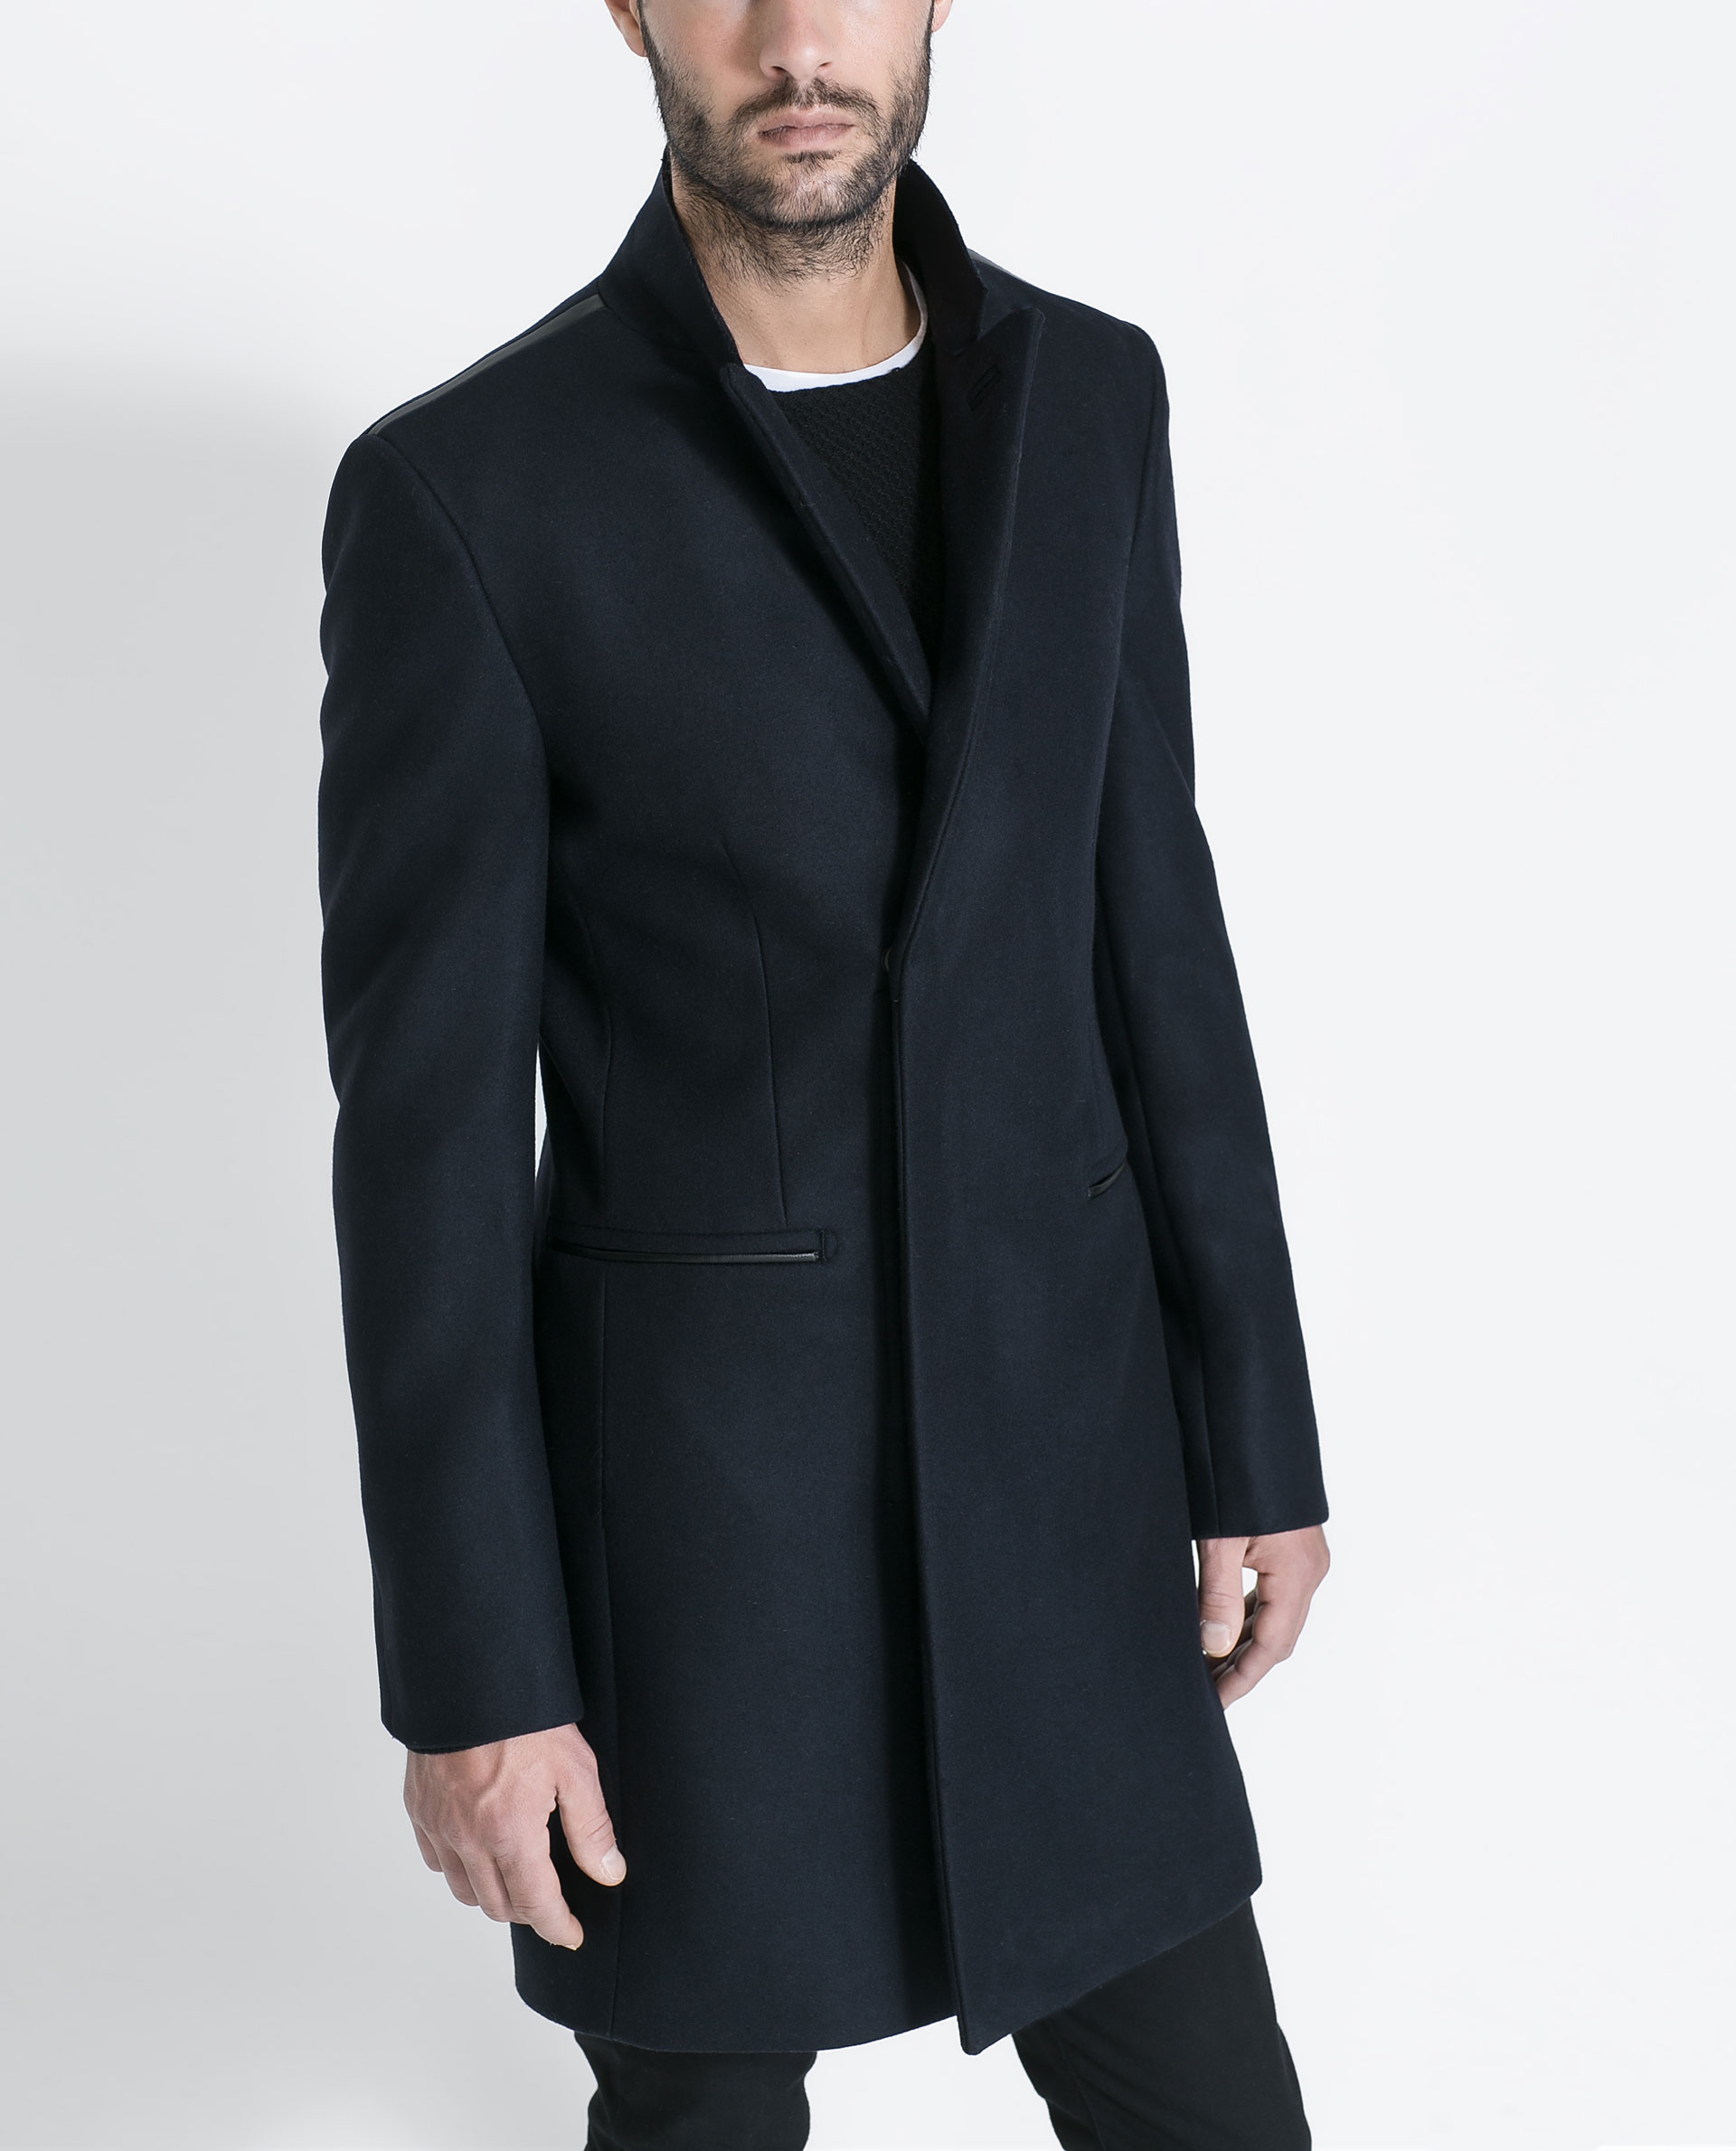 Мужские пальто купить недорого. Zara Palto мужское. Пальто мужское Zara man двухбортовое. Zara одежда Palto man.